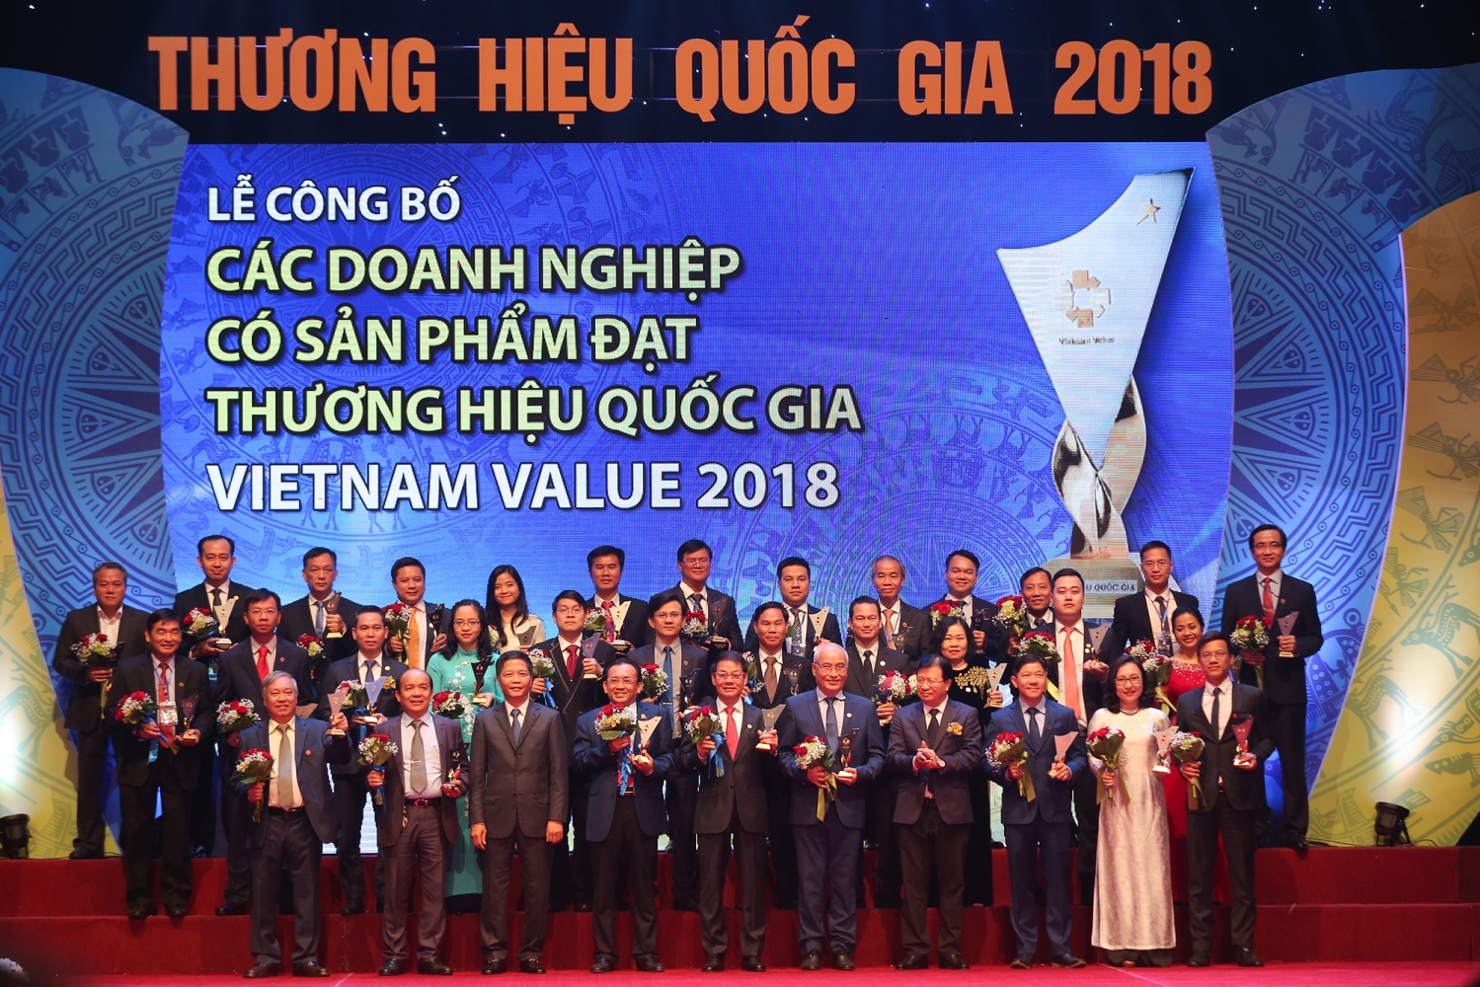 Việc xét chọn sản phẩm đạt Thương hiệu quốc gia Việt Nam được tổ chức định kỳ 2 năm một lần vào các năm chẵn